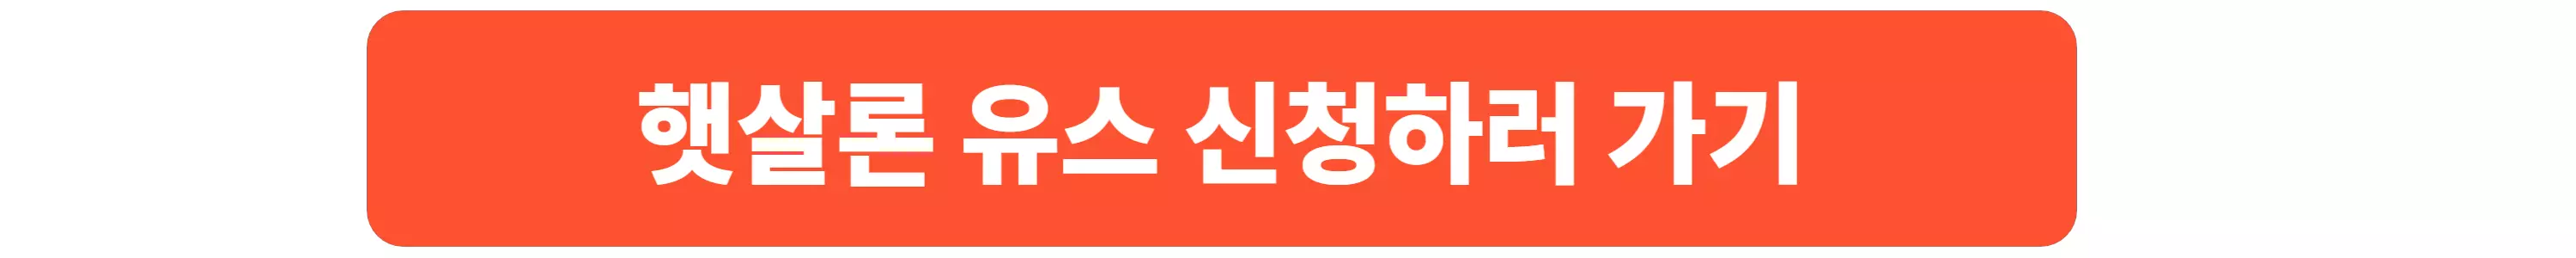 무직자-소액-대출-정부지원-햇살론-유스